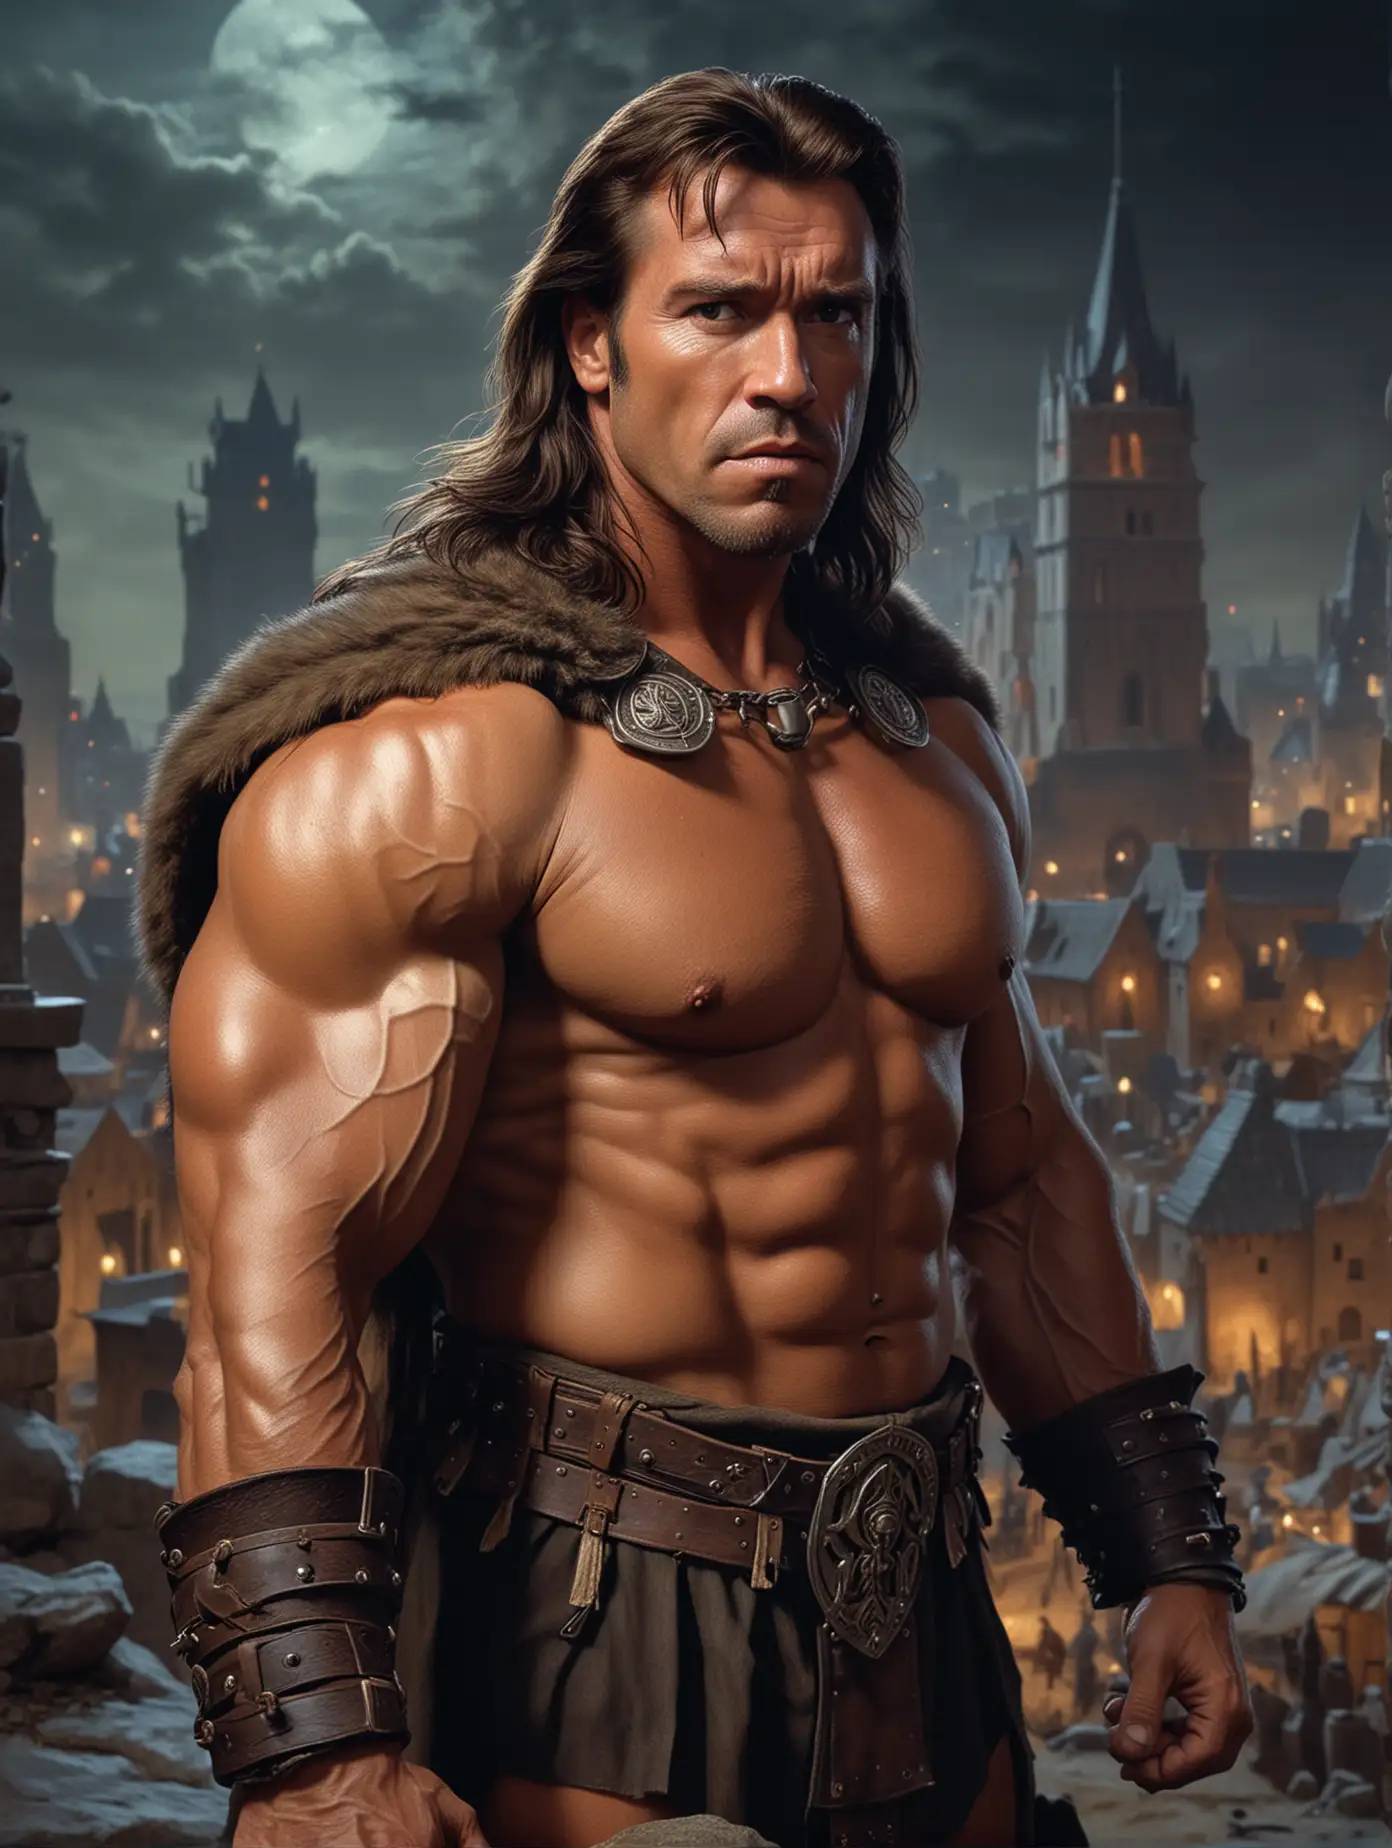 Conan the Barbarian CloseUp Portrait in Ancient City Nightscape